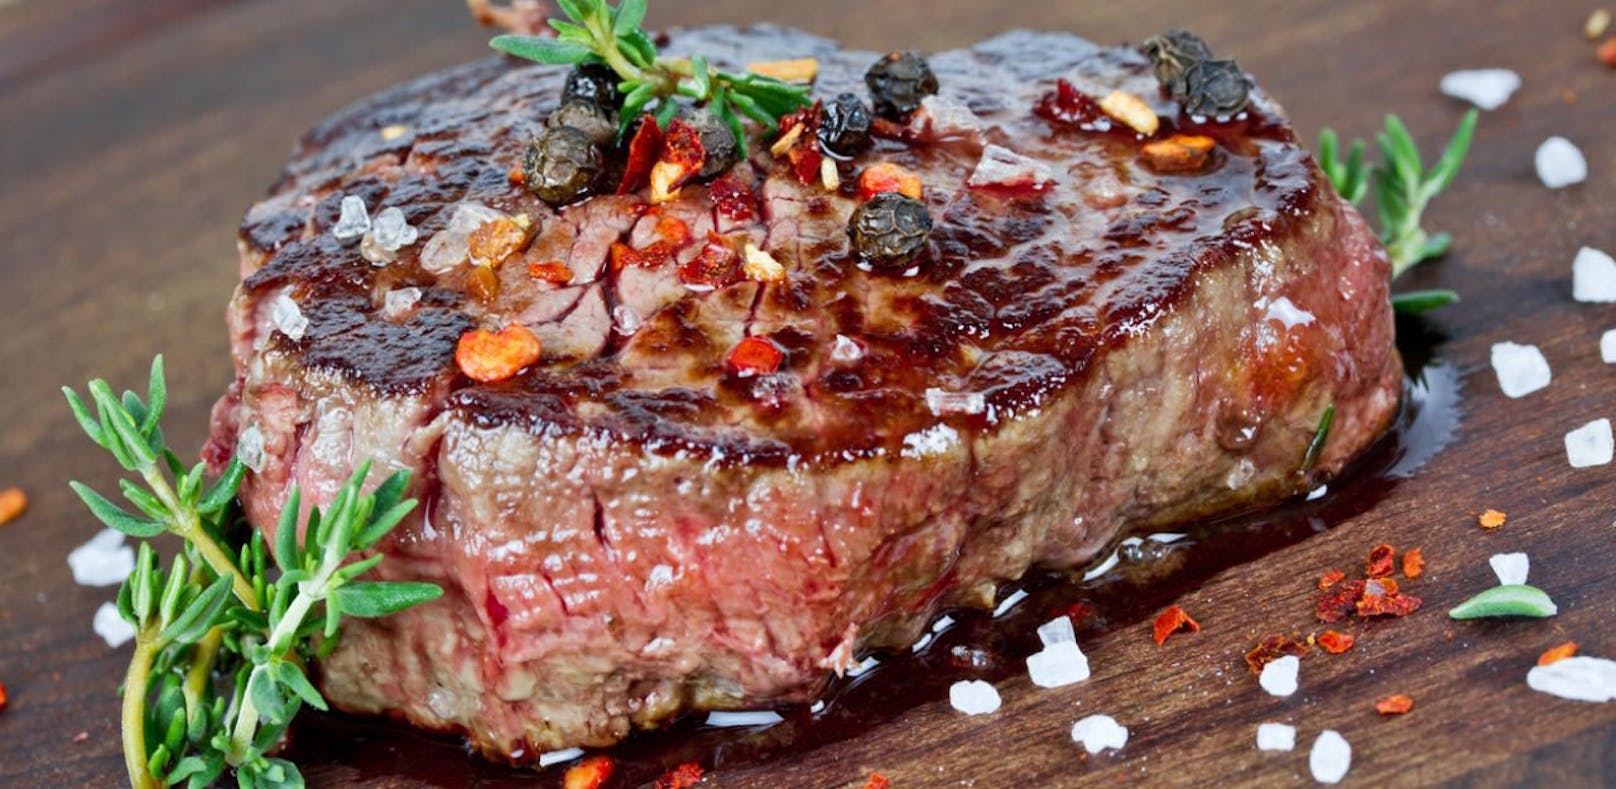 Hersteller Vivera bringt erstmals 100 % pflanzliches Steak auf den Markt